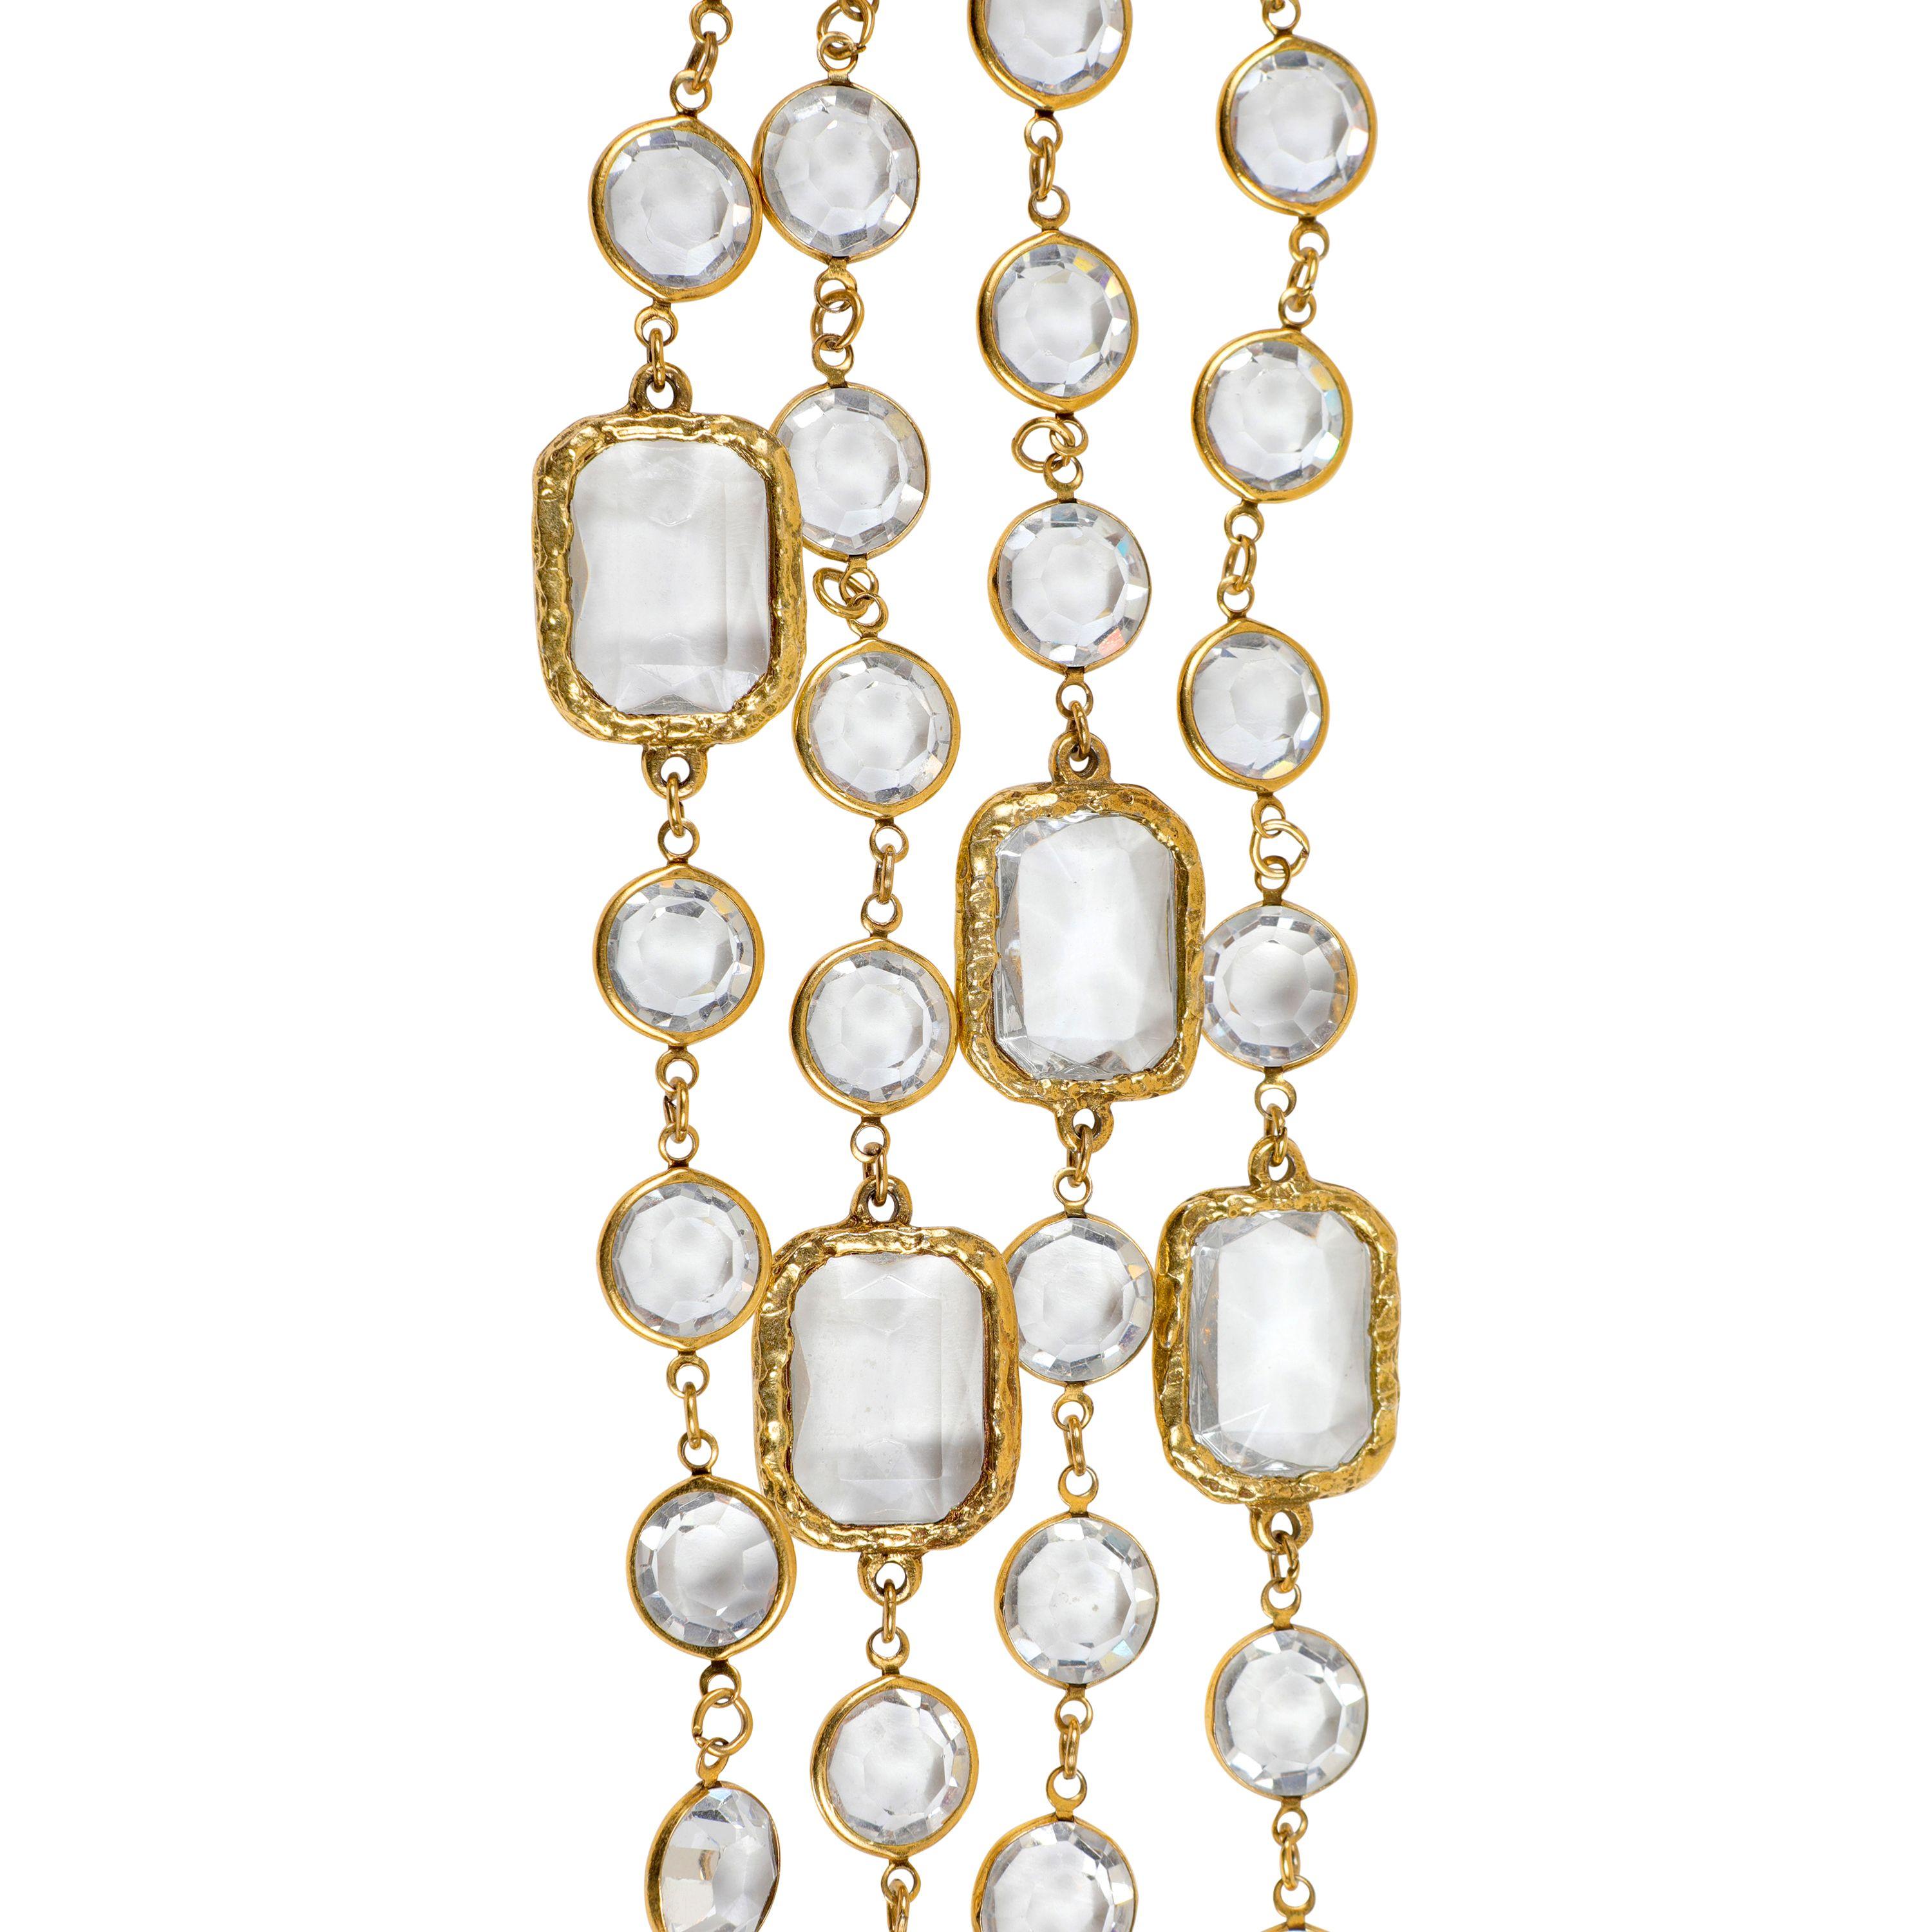 Diese authentische Chanel facettierte Kristall-Halskette ist in ausgezeichnetem Vintage-Zustand.    Runde, facettierte Kristalle sind mit großen, rechteckigen Kristallen durchsetzt.  Goldfarbene Hardware.   Inklusive Tasche oder Box.

PBF 13707
